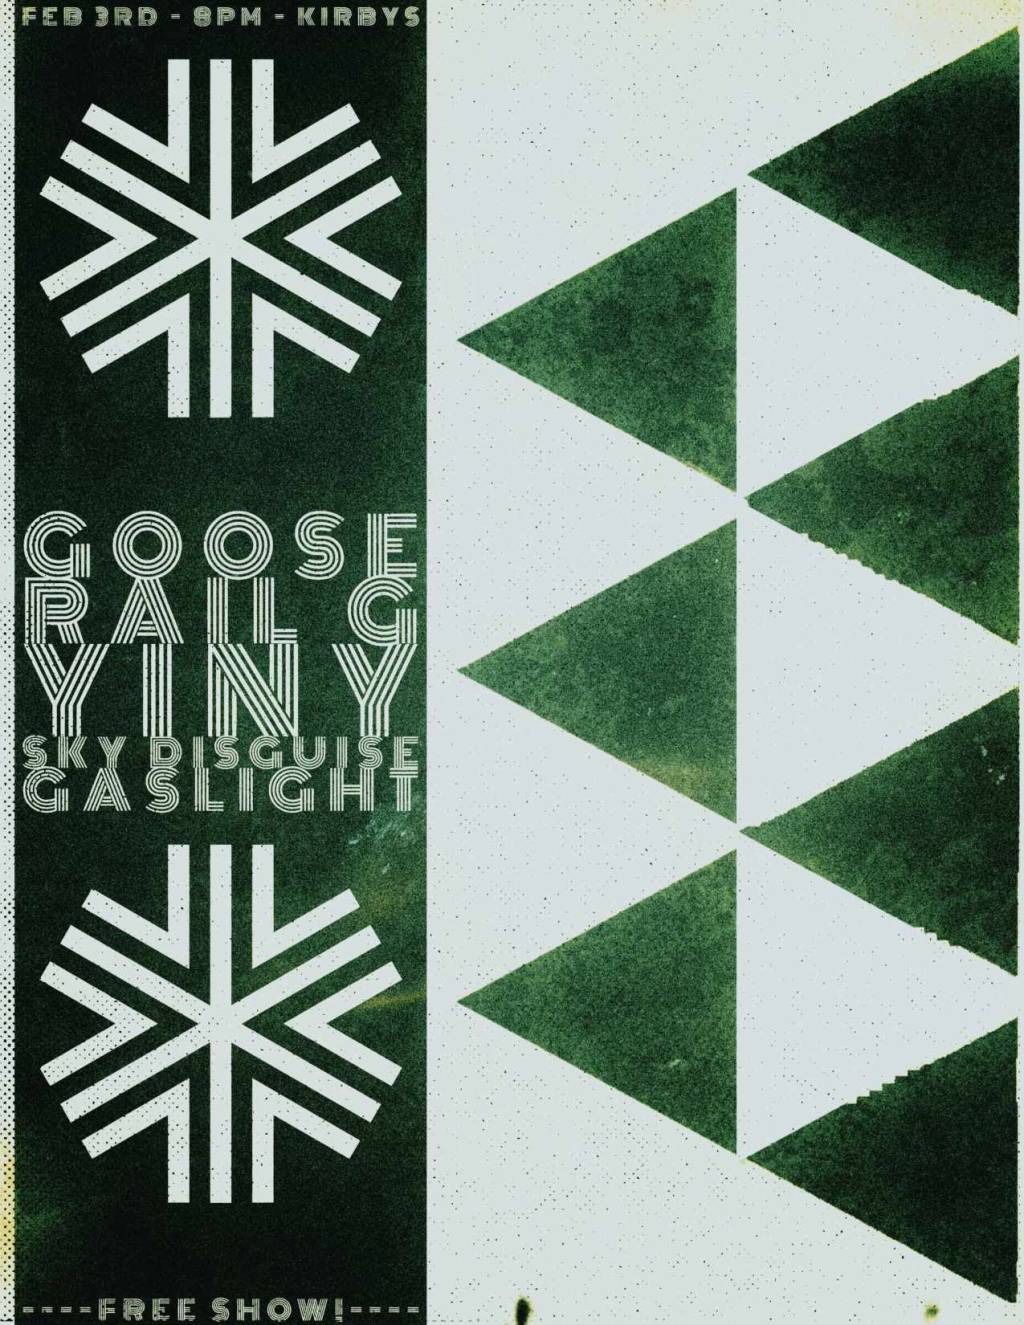 Rail G / Goose / Yiny / Sky Disguise / Gaslight – 2/3/24